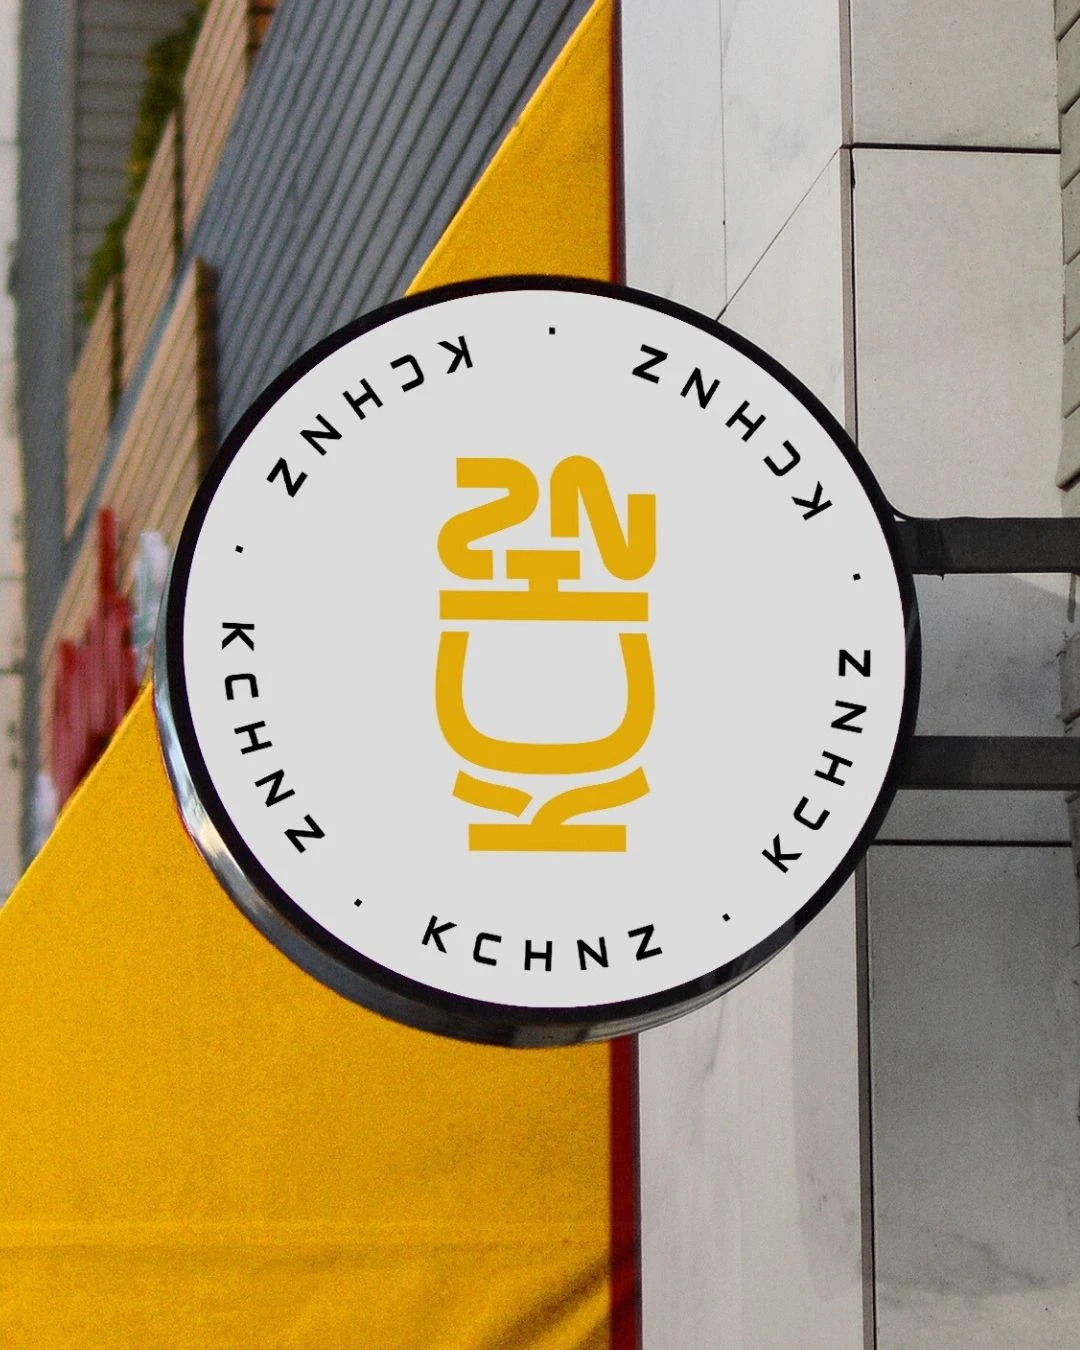 KCHNZ - Abu Dhabi Shared Kitchen branding